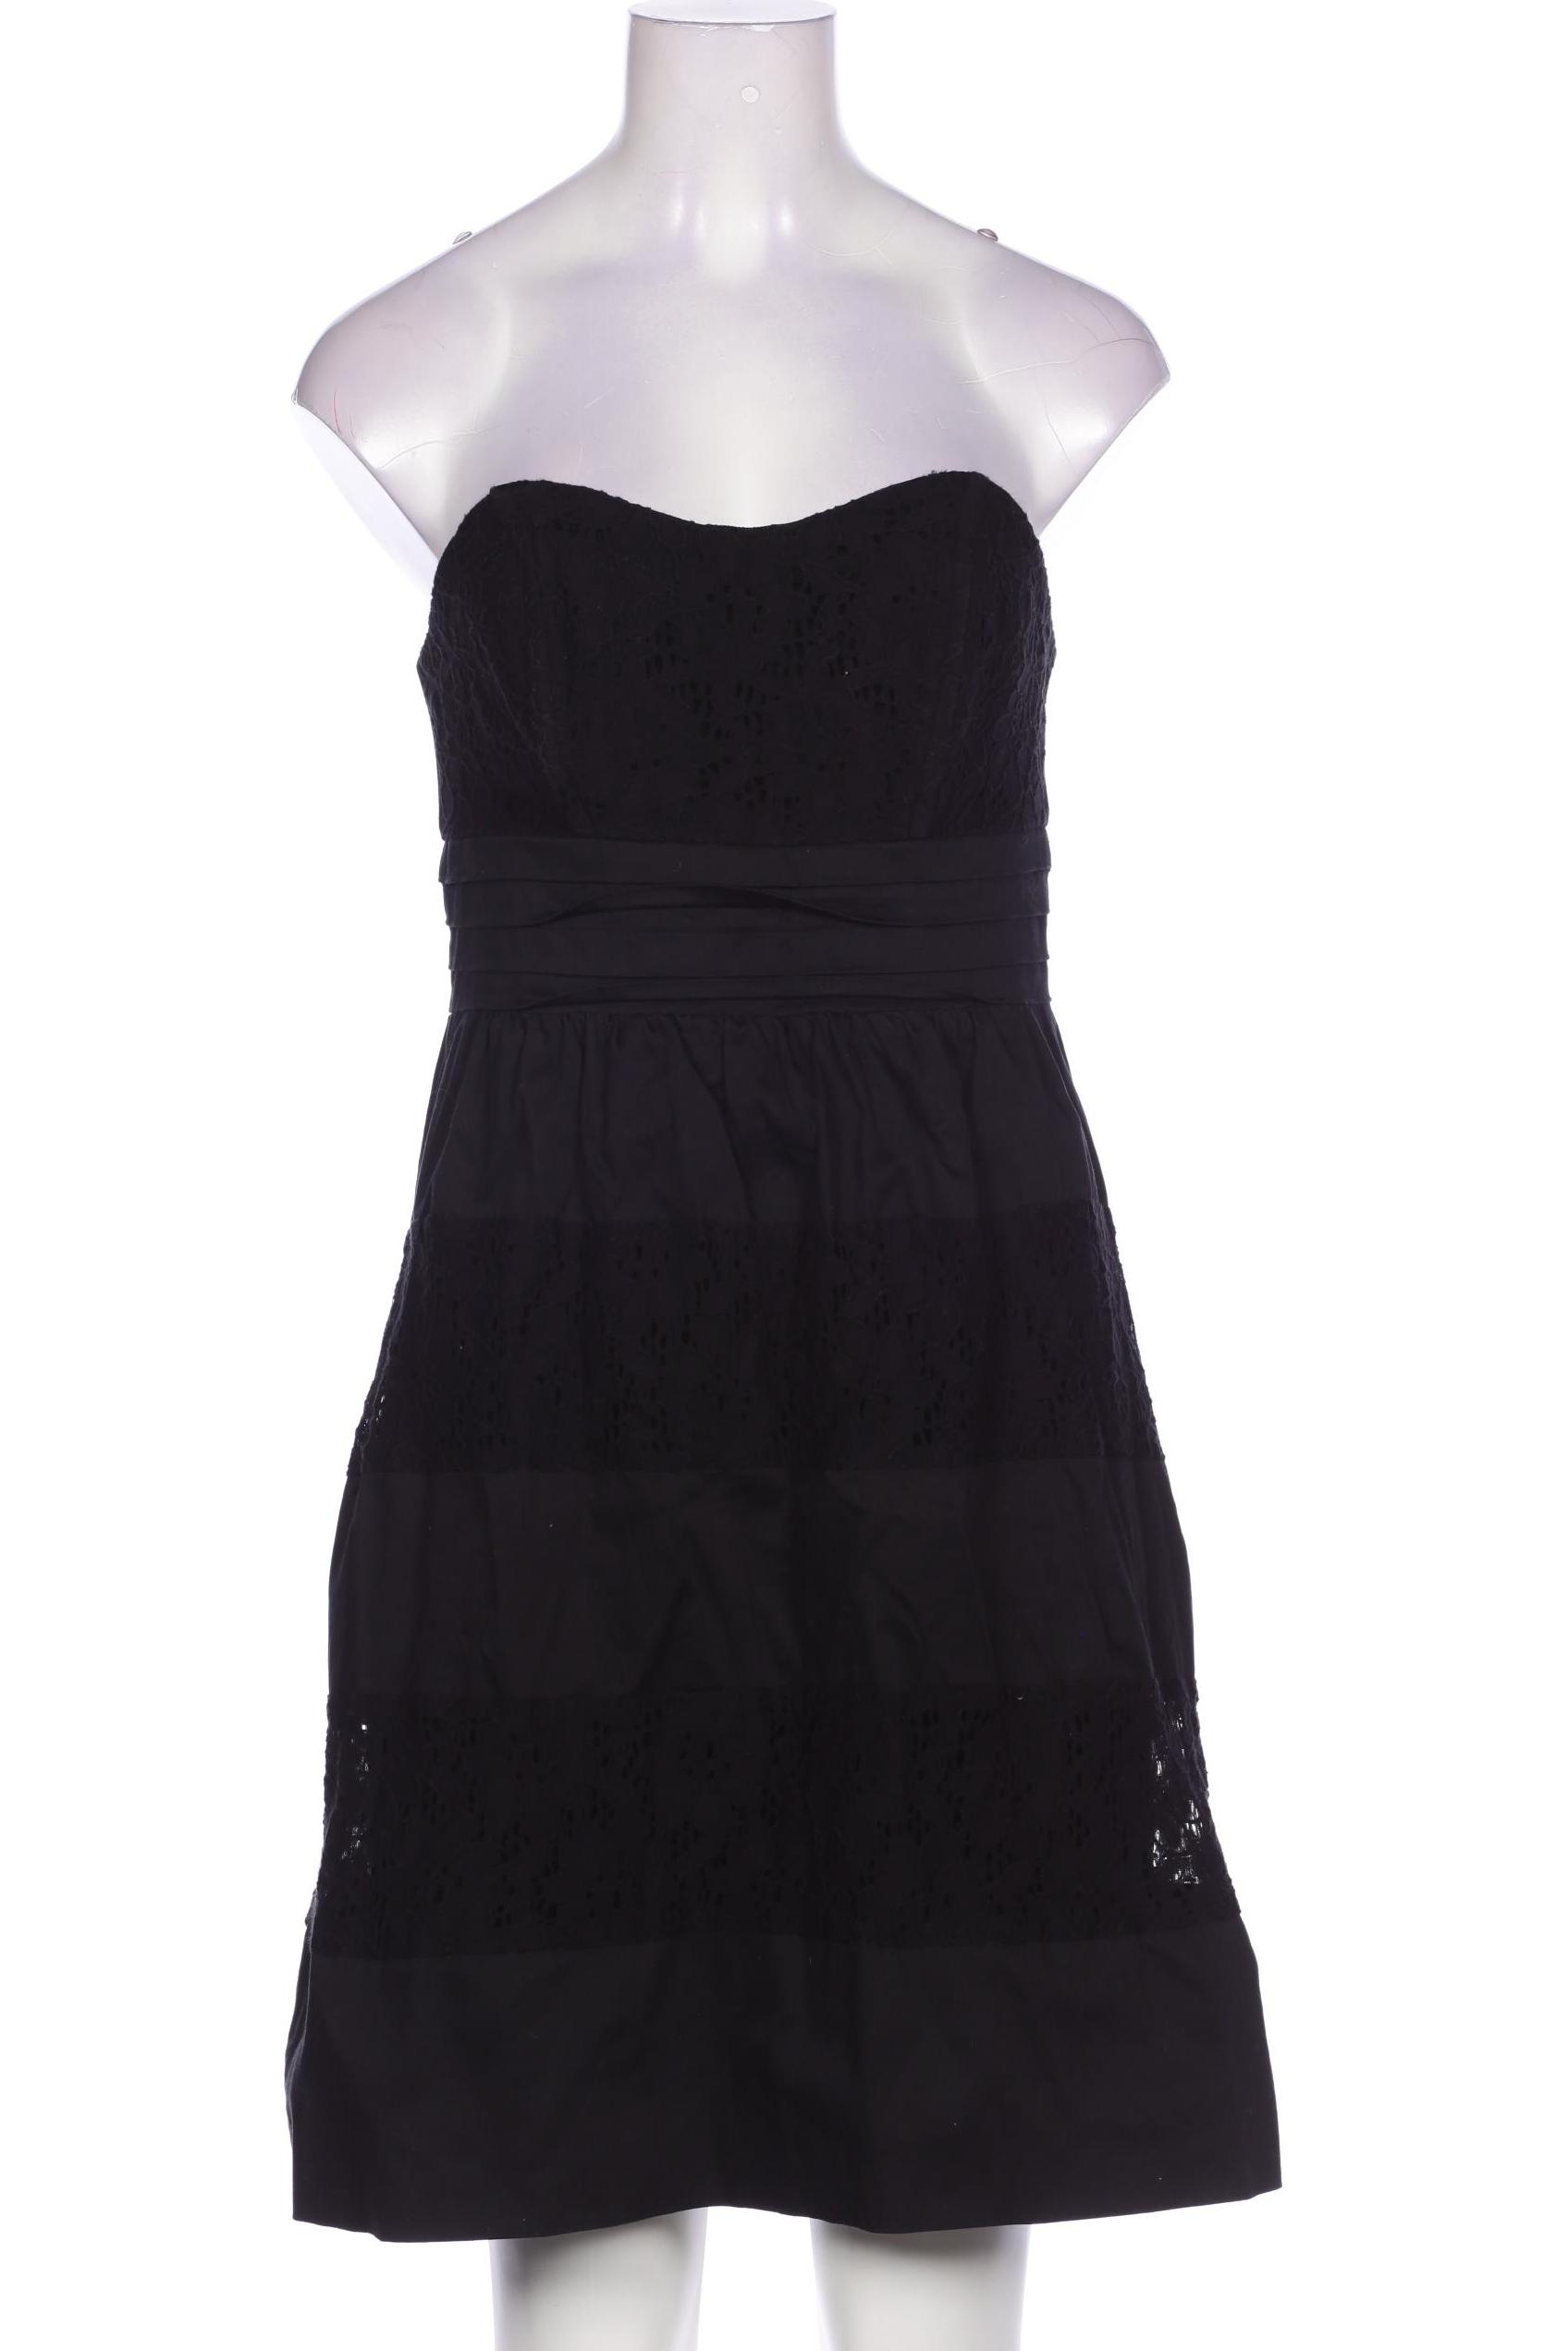 Laura Scott Damen Kleid, schwarz von laura scott